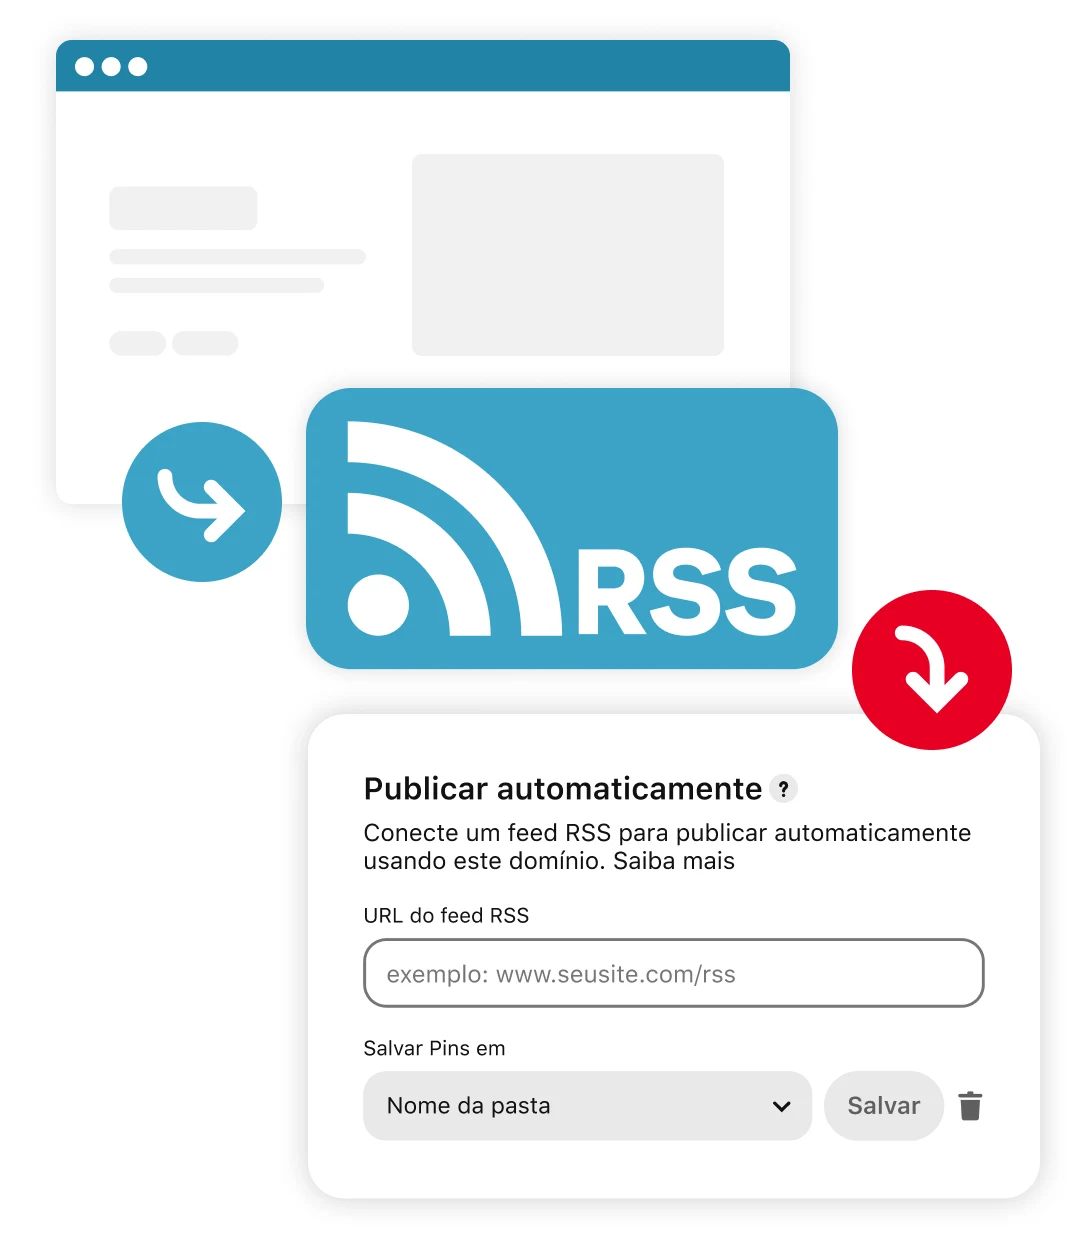 Renderização do fluxo do feed RSS para a publicação automática do Pinterest